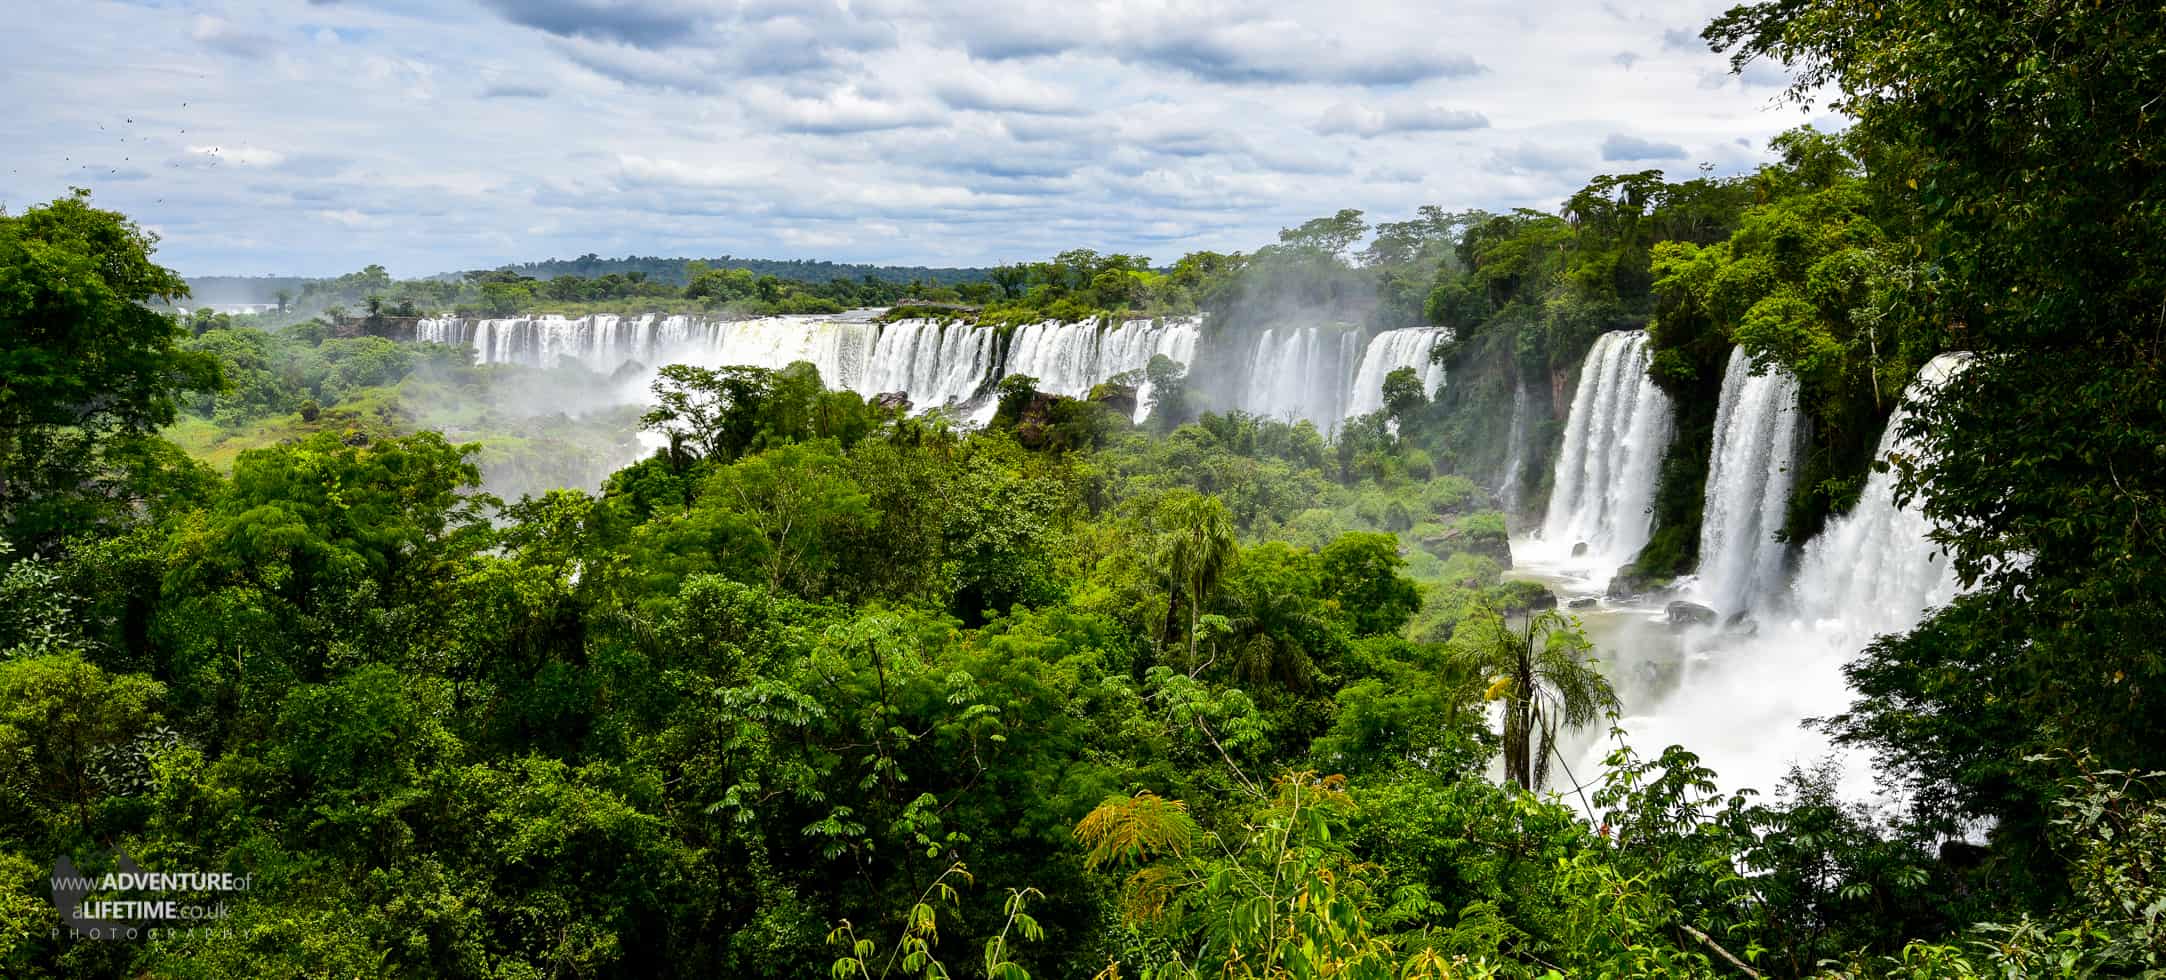 Argentinean Panoramic of Iguassu Falls through the Jungle.